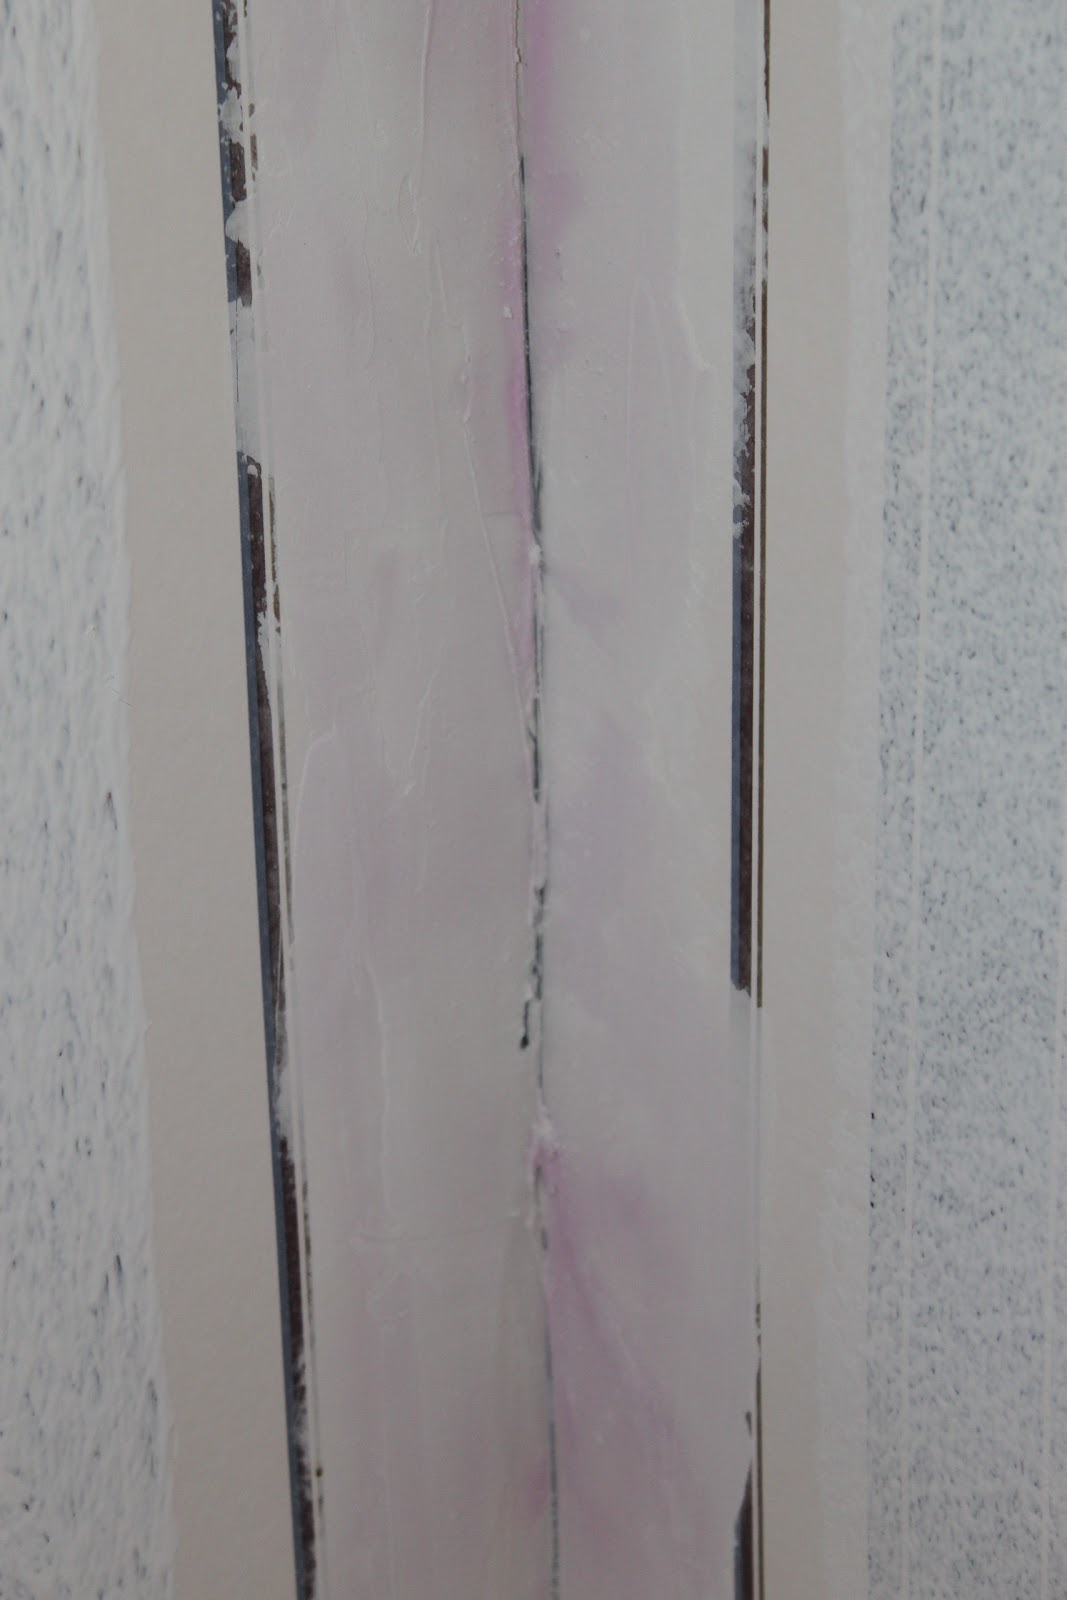 49+] Painting Over Wallpaper Seams - WallpaperSafari